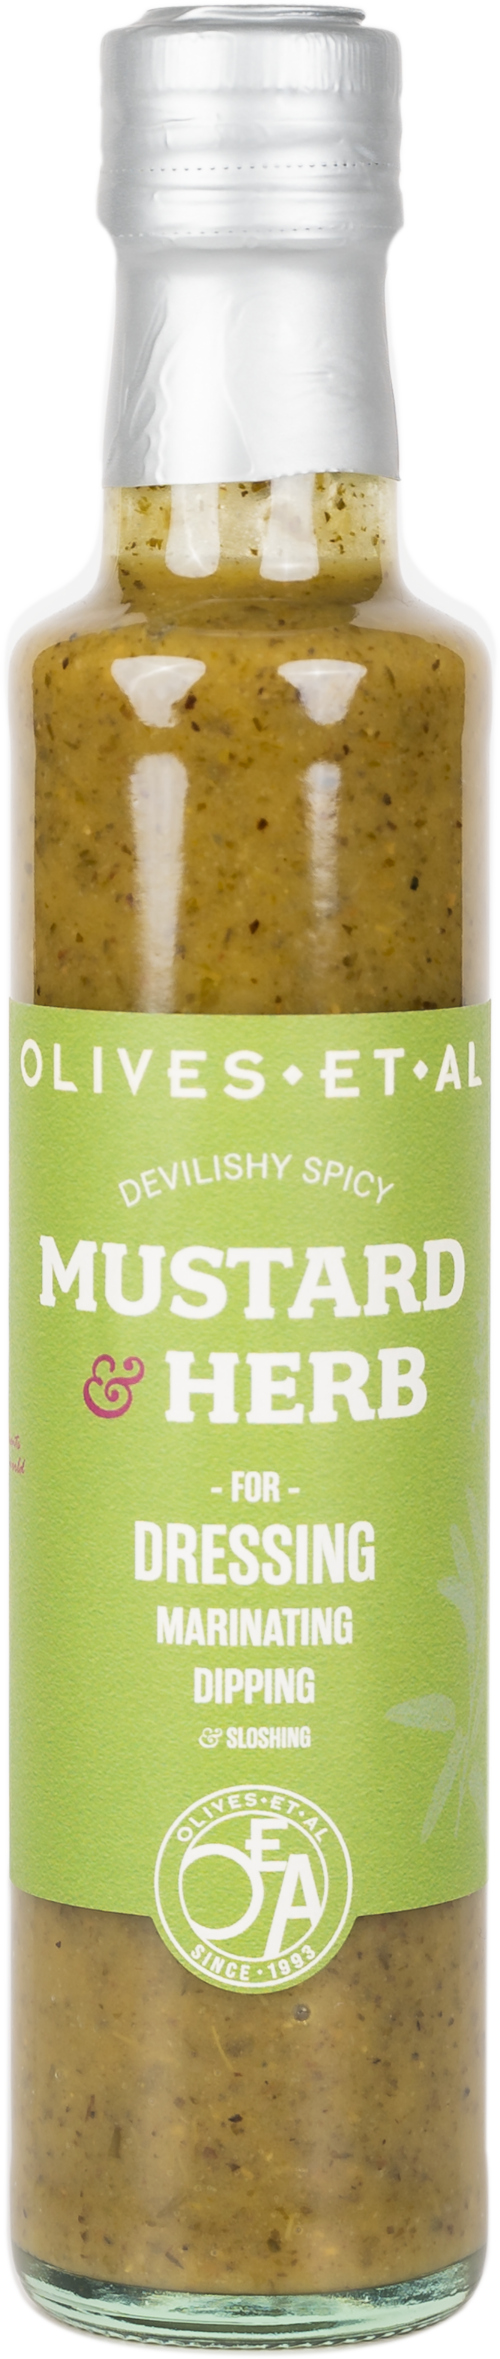 OLIVES ET AL Proper Mustard & Herb Dressing & Marinade 250ml